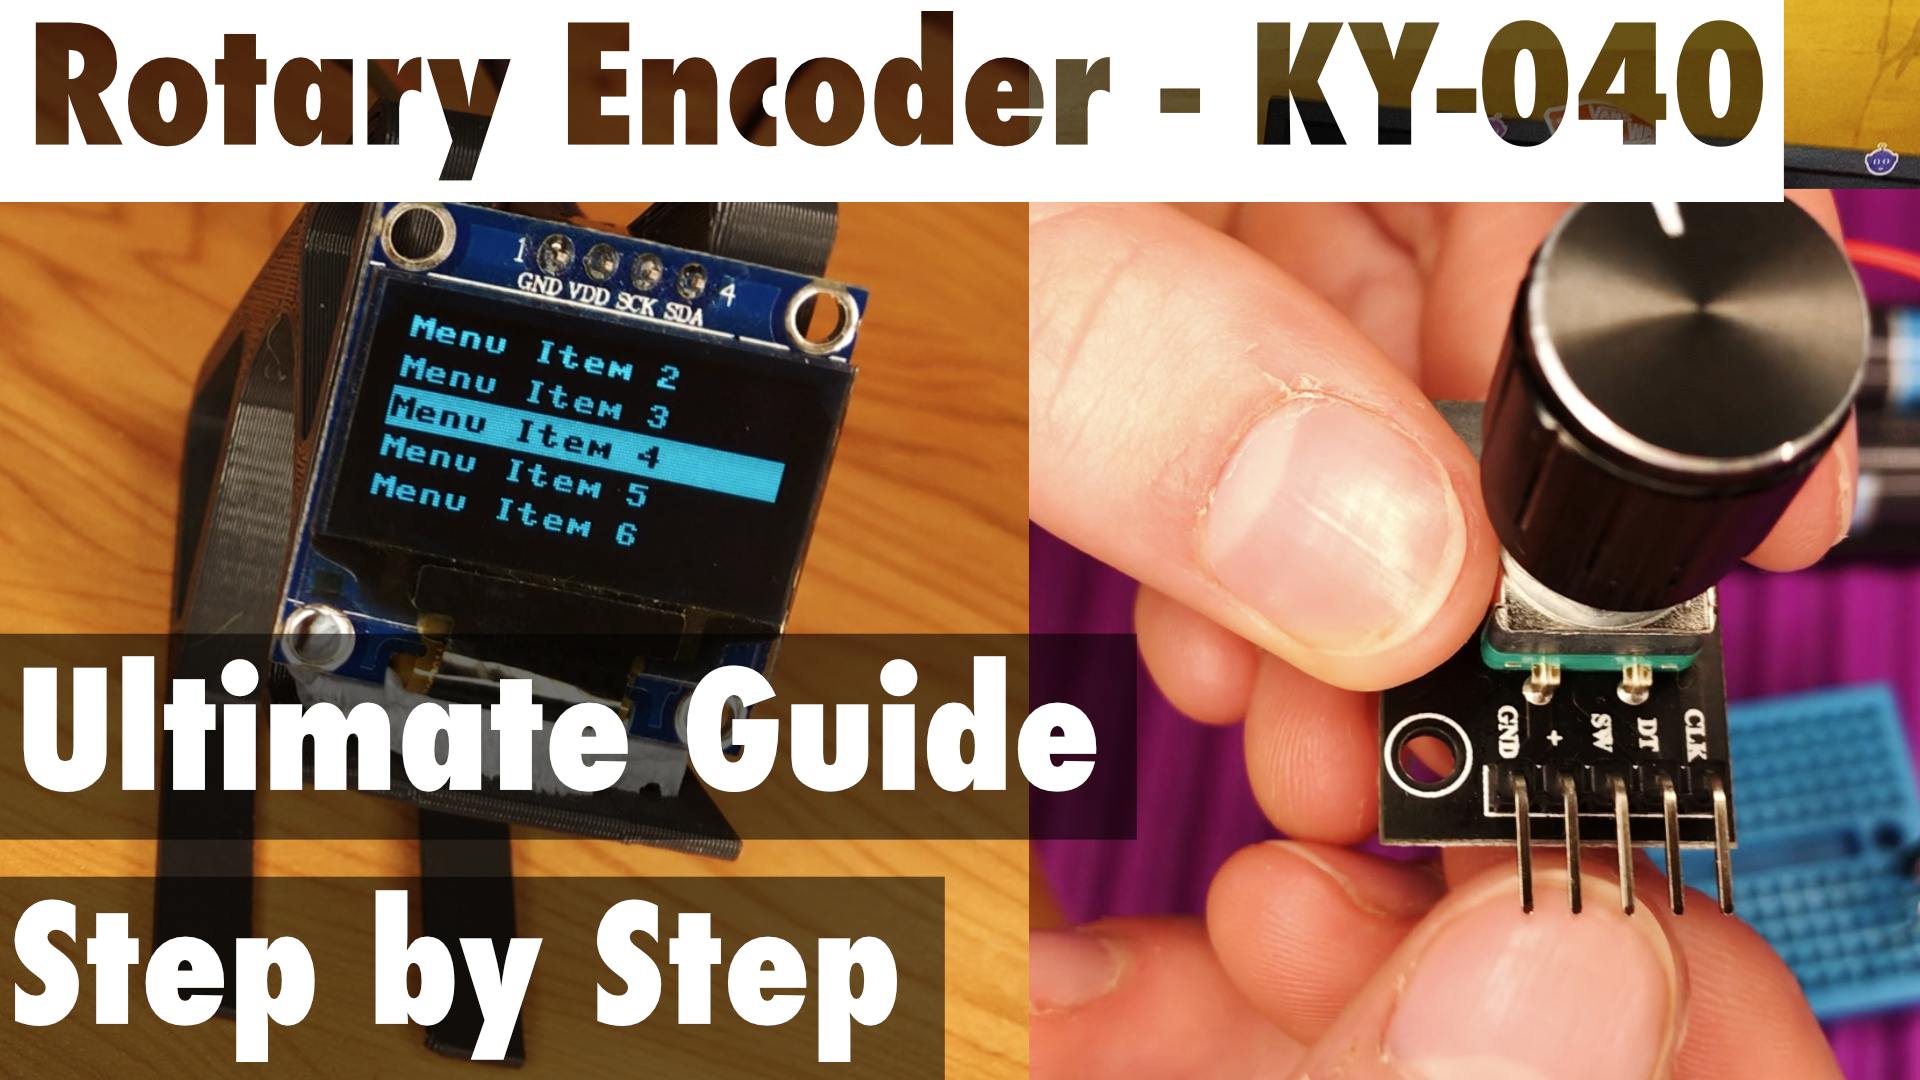 KY-040 rotary encoder.